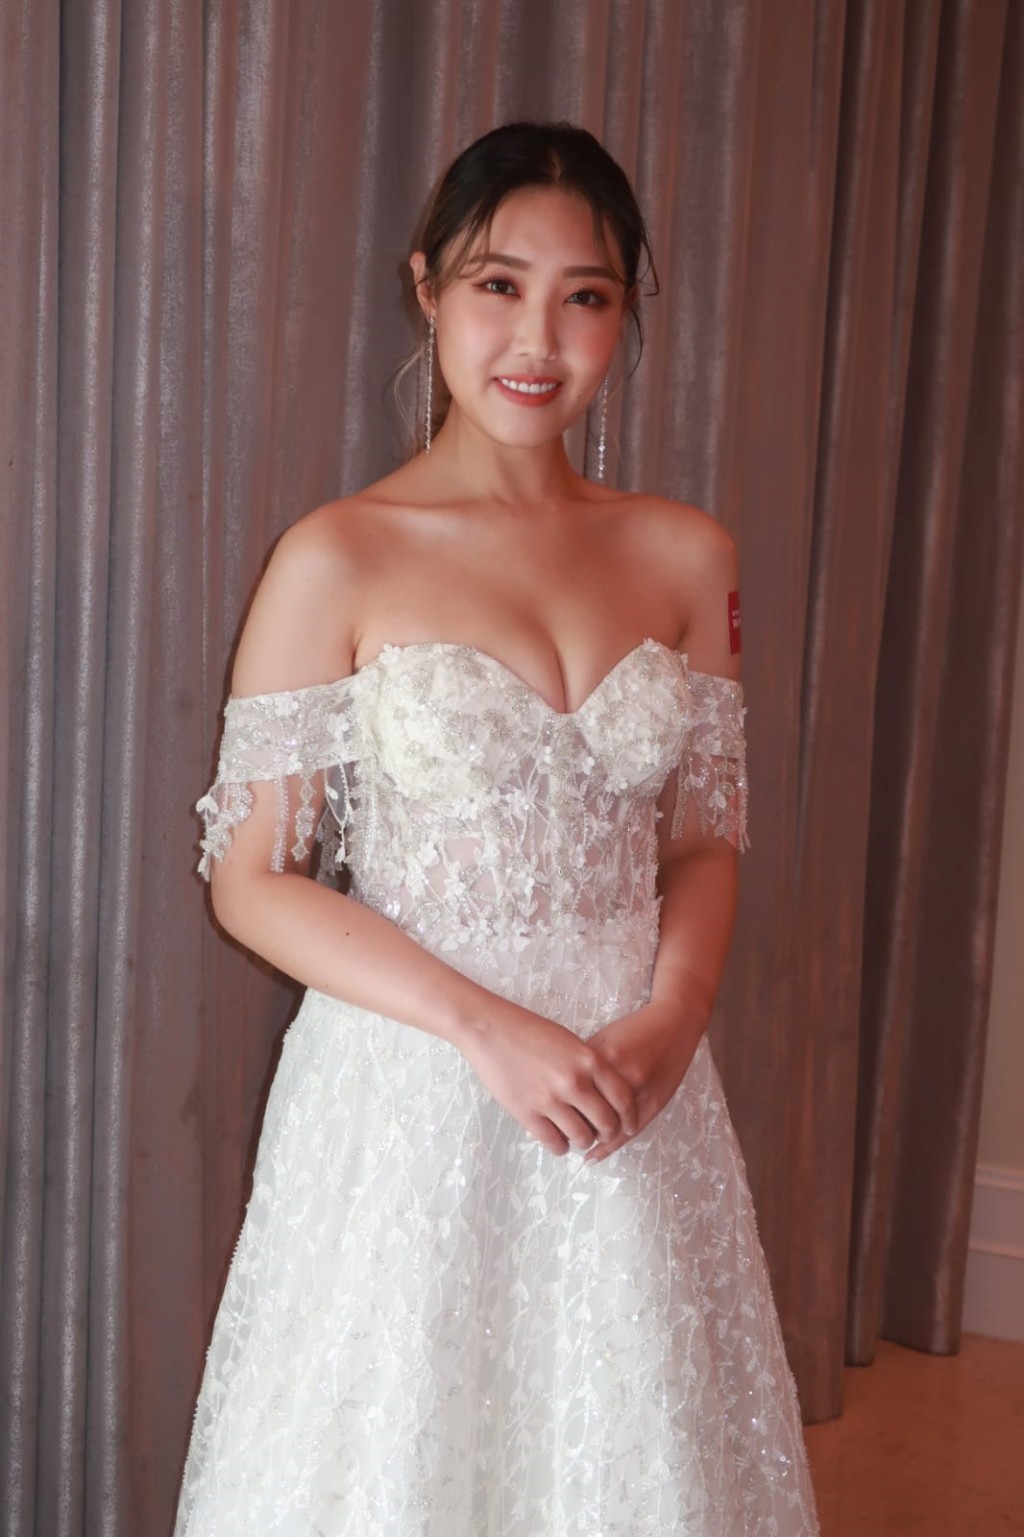 林秀怡早年已曾试过穿婚纱。